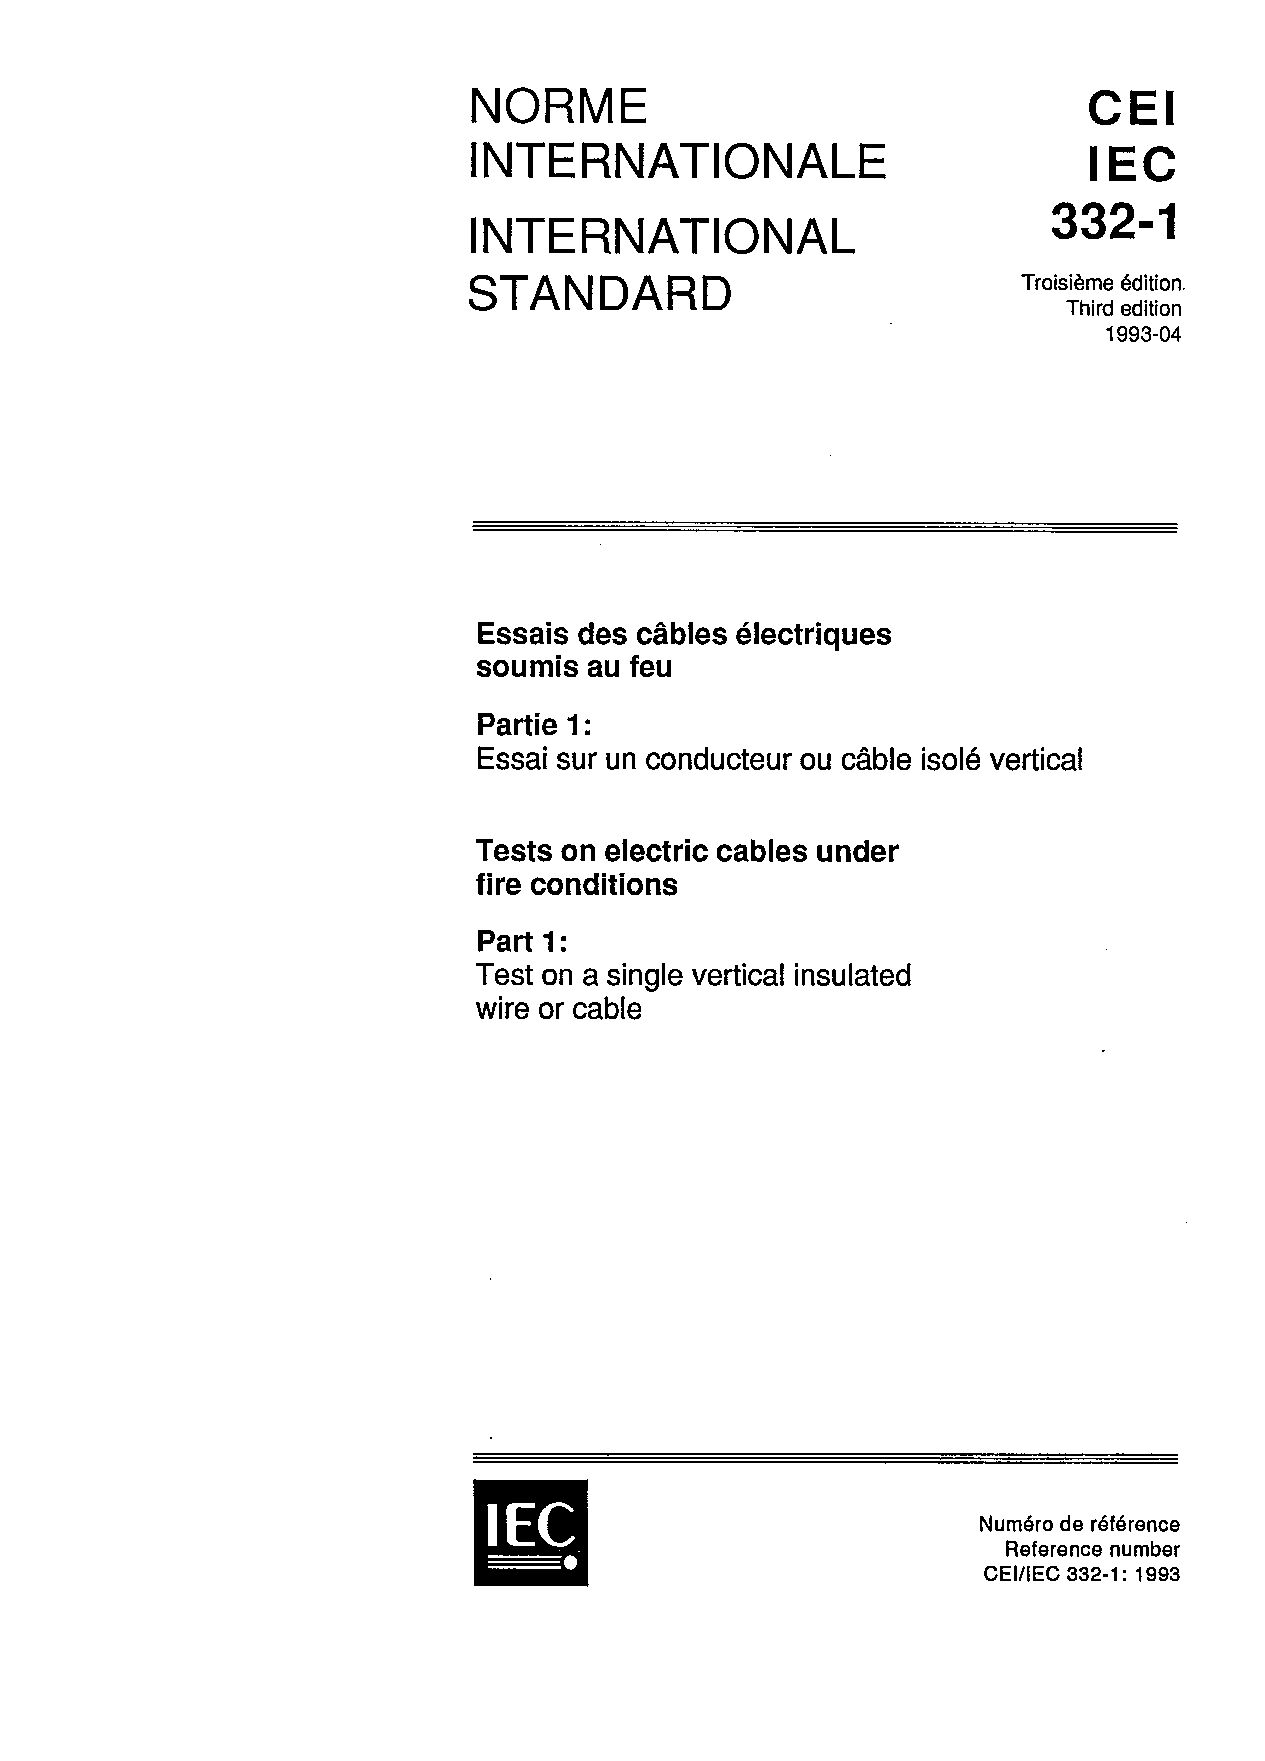 IEC 60332-1:1993